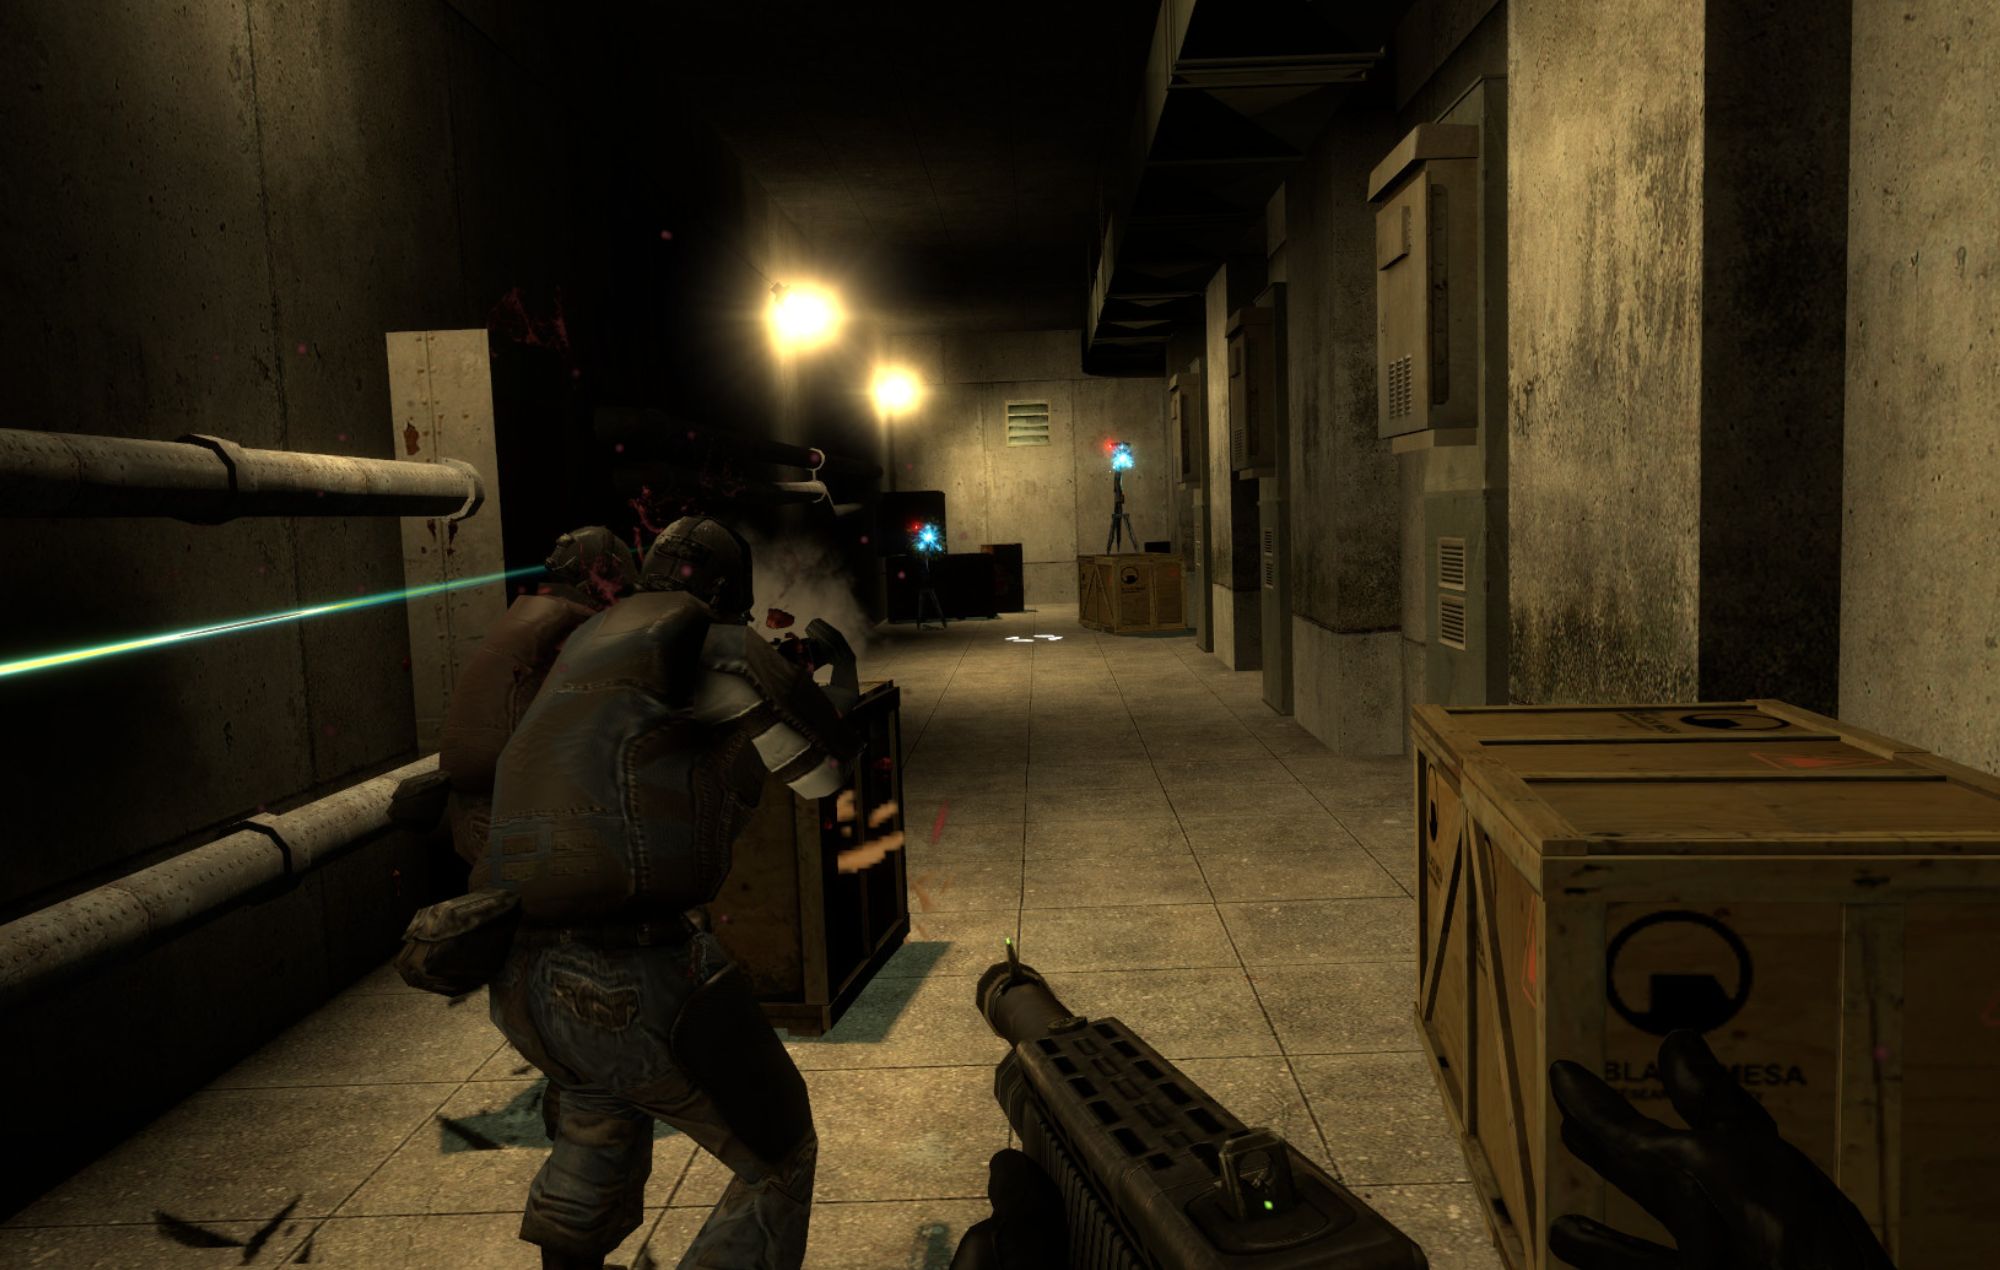 Le mod entièrement vocal 'Half-Life 2' vous permet de contrôler une équipe Combine